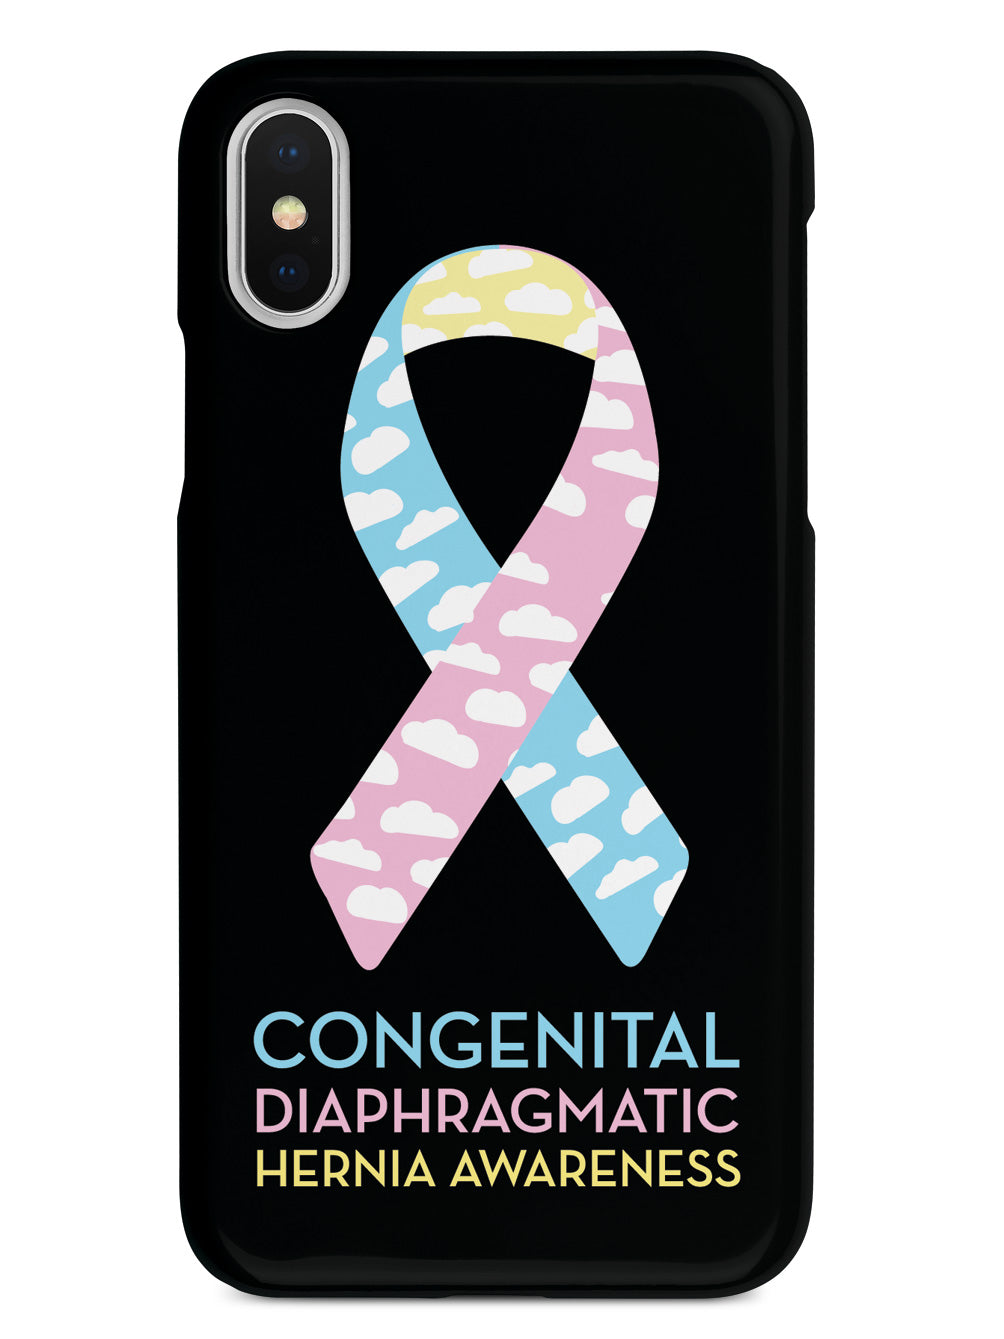 Congenital Diaphragmatic Hernia Awareness - Black Case